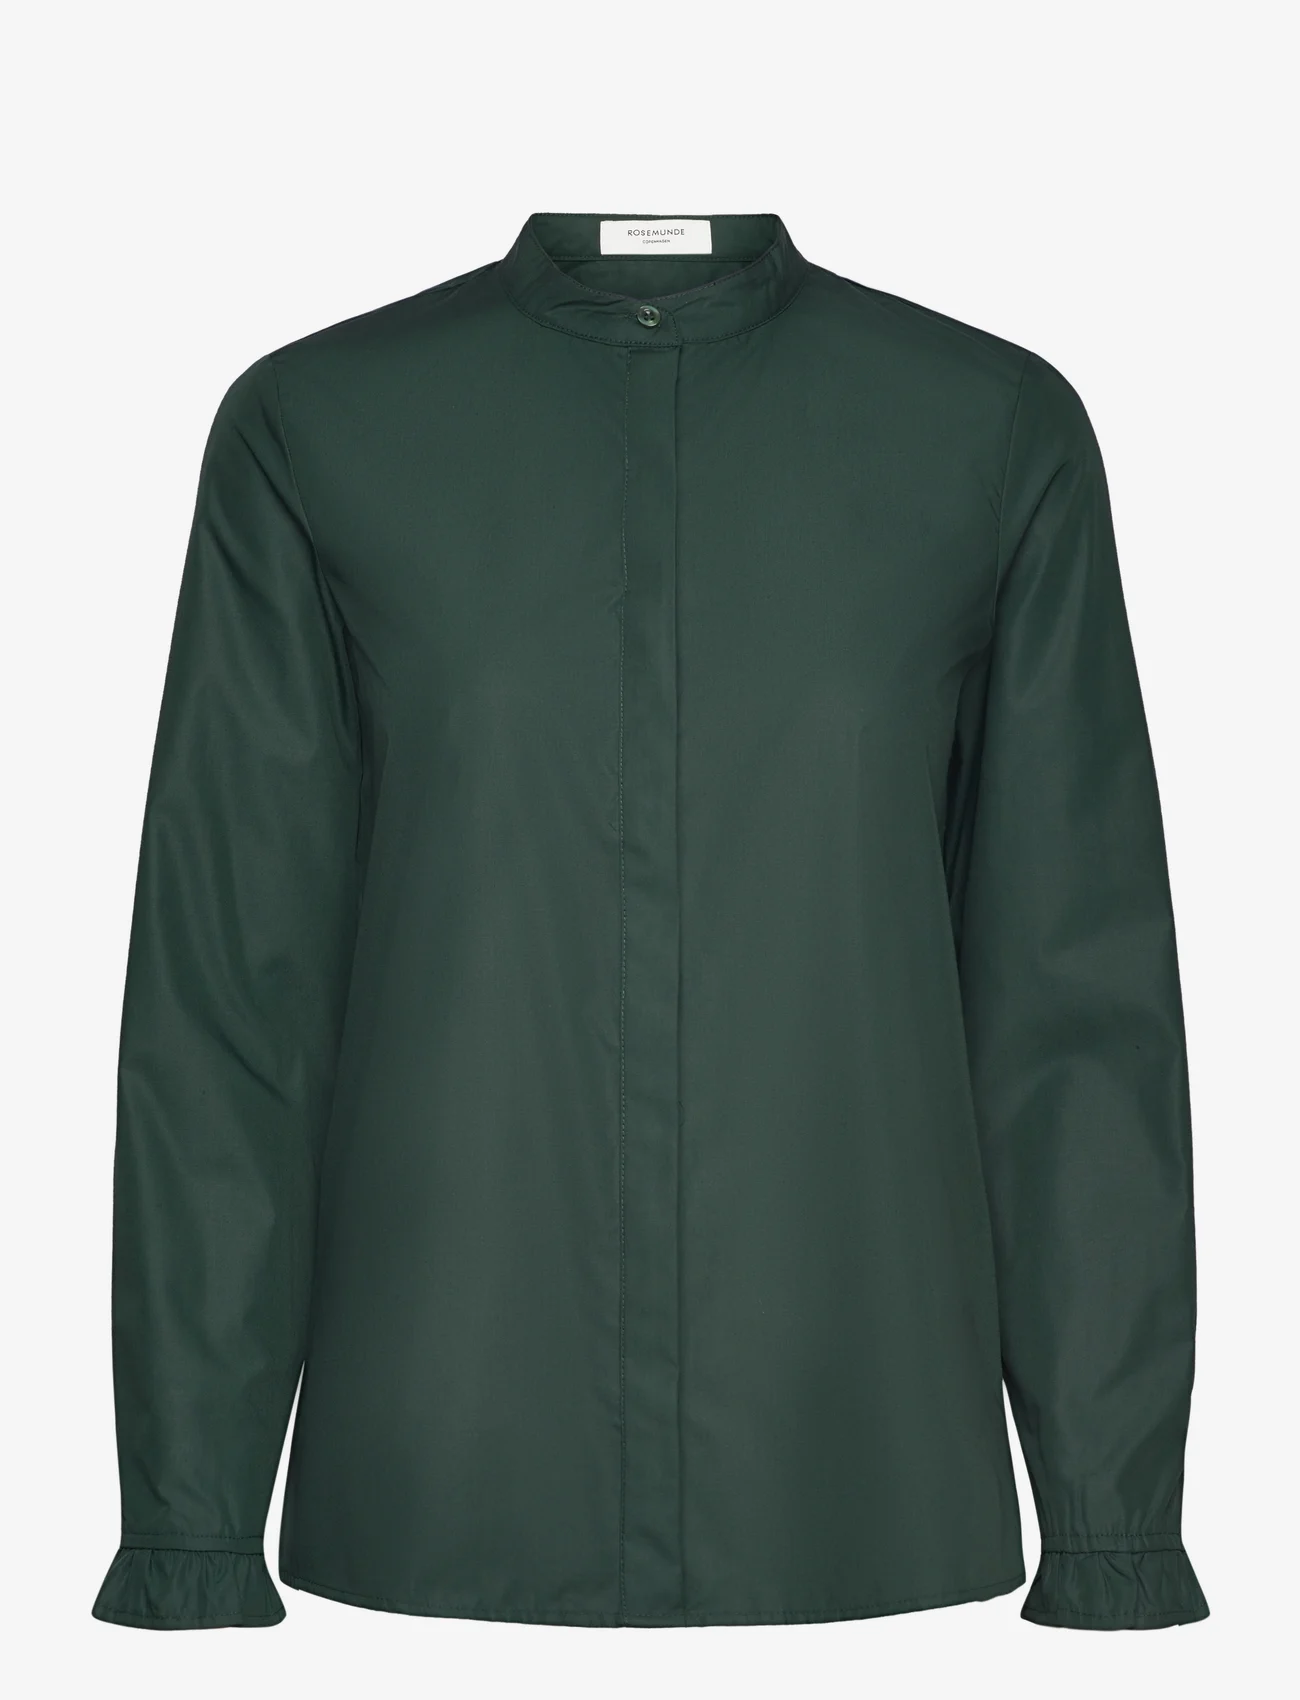 Rosemunde - Shirt - langærmede skjorter - dark green - 0